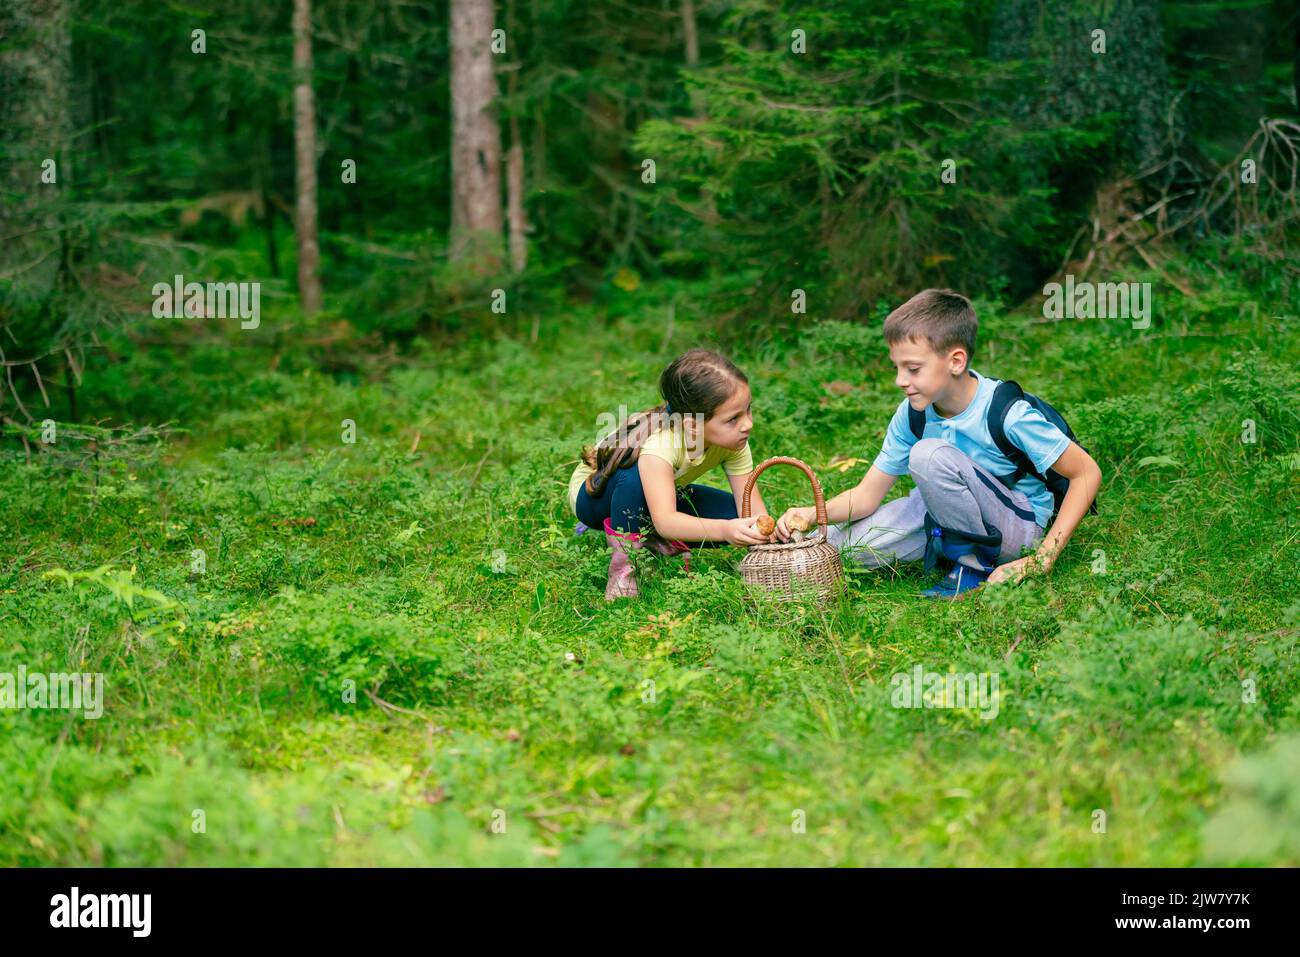 Una niña y un niño con botas están sentados y poniendo en una canasta las setas que encontraron en el bosque Foto de stock